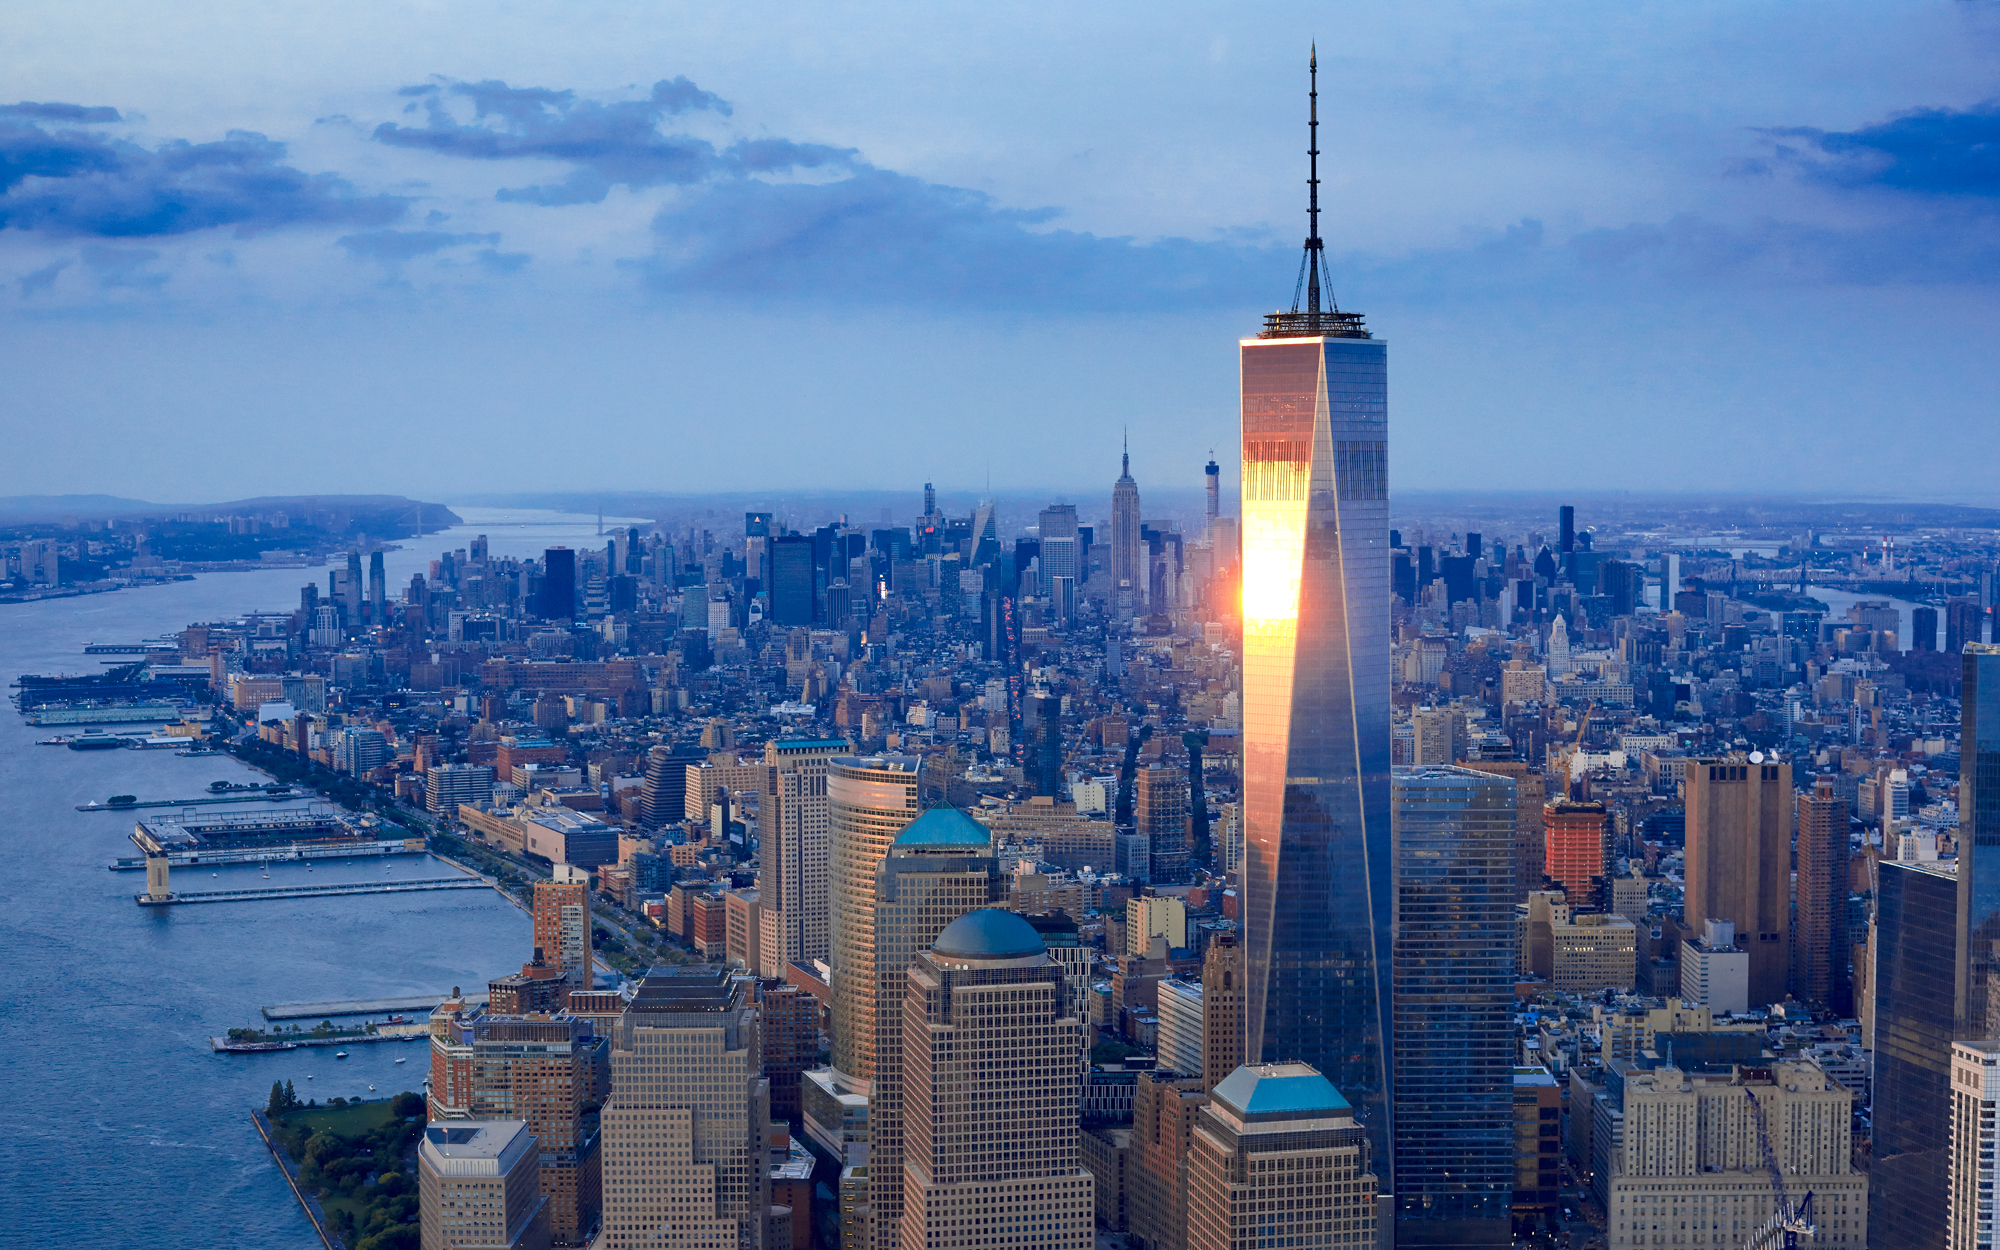 Остров небоскребов. Башня свободы в Нью-Йорке. Всемирный торговый центр 1 Нью-Йорк. Всемирный торговый центр 1 (541 м). Нью-Йорк, США. Башня свободы Манхэттен.